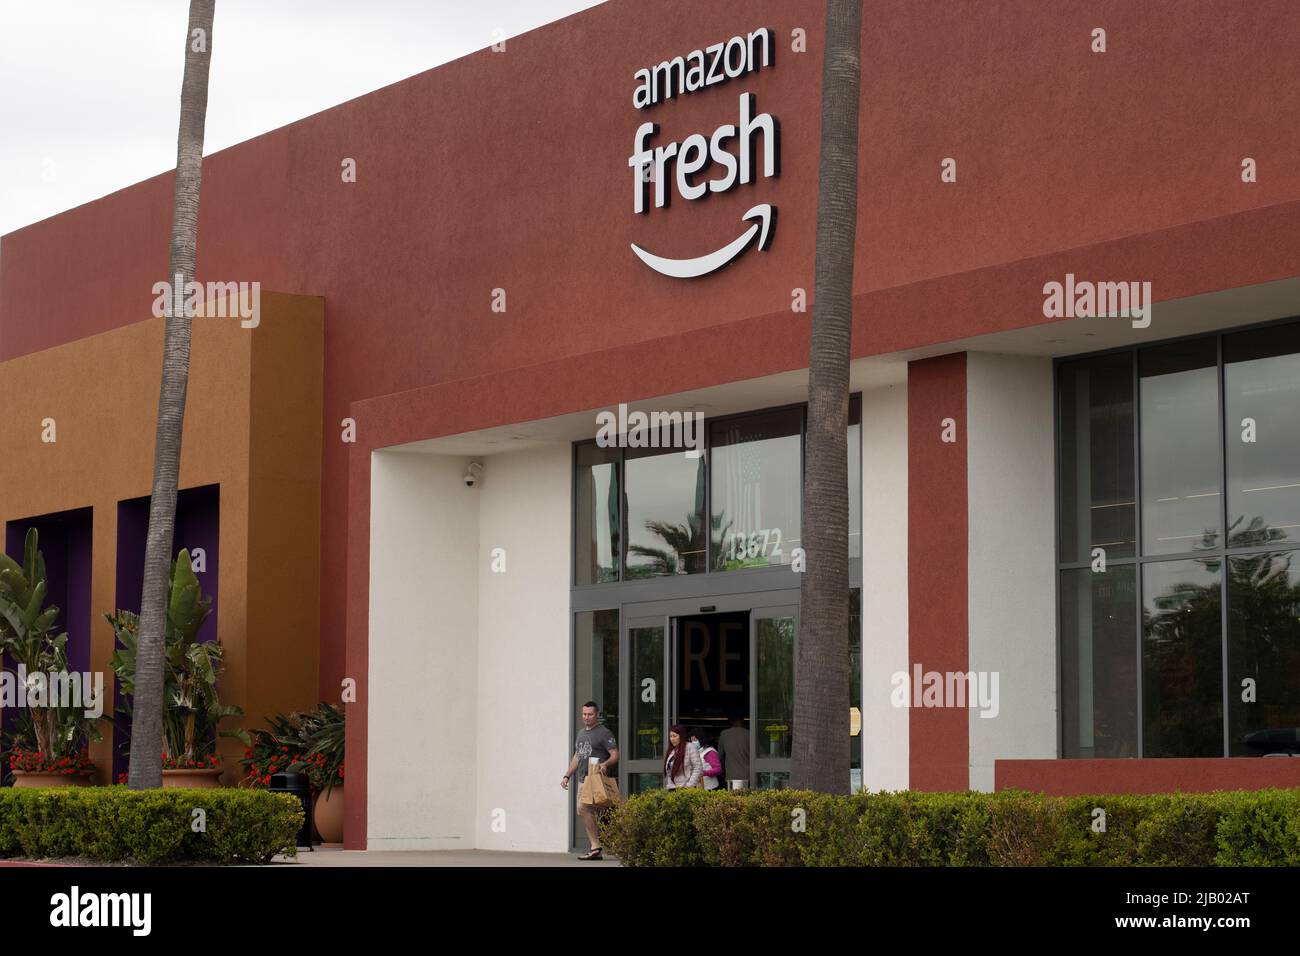 L'épicerie fraîche d'Amazone à Irvine, Californie, vu dimanche, 8 mai 2022. Amazon Fresh est une filiale de la société de commerce électronique Amazon.com. Banque D'Images